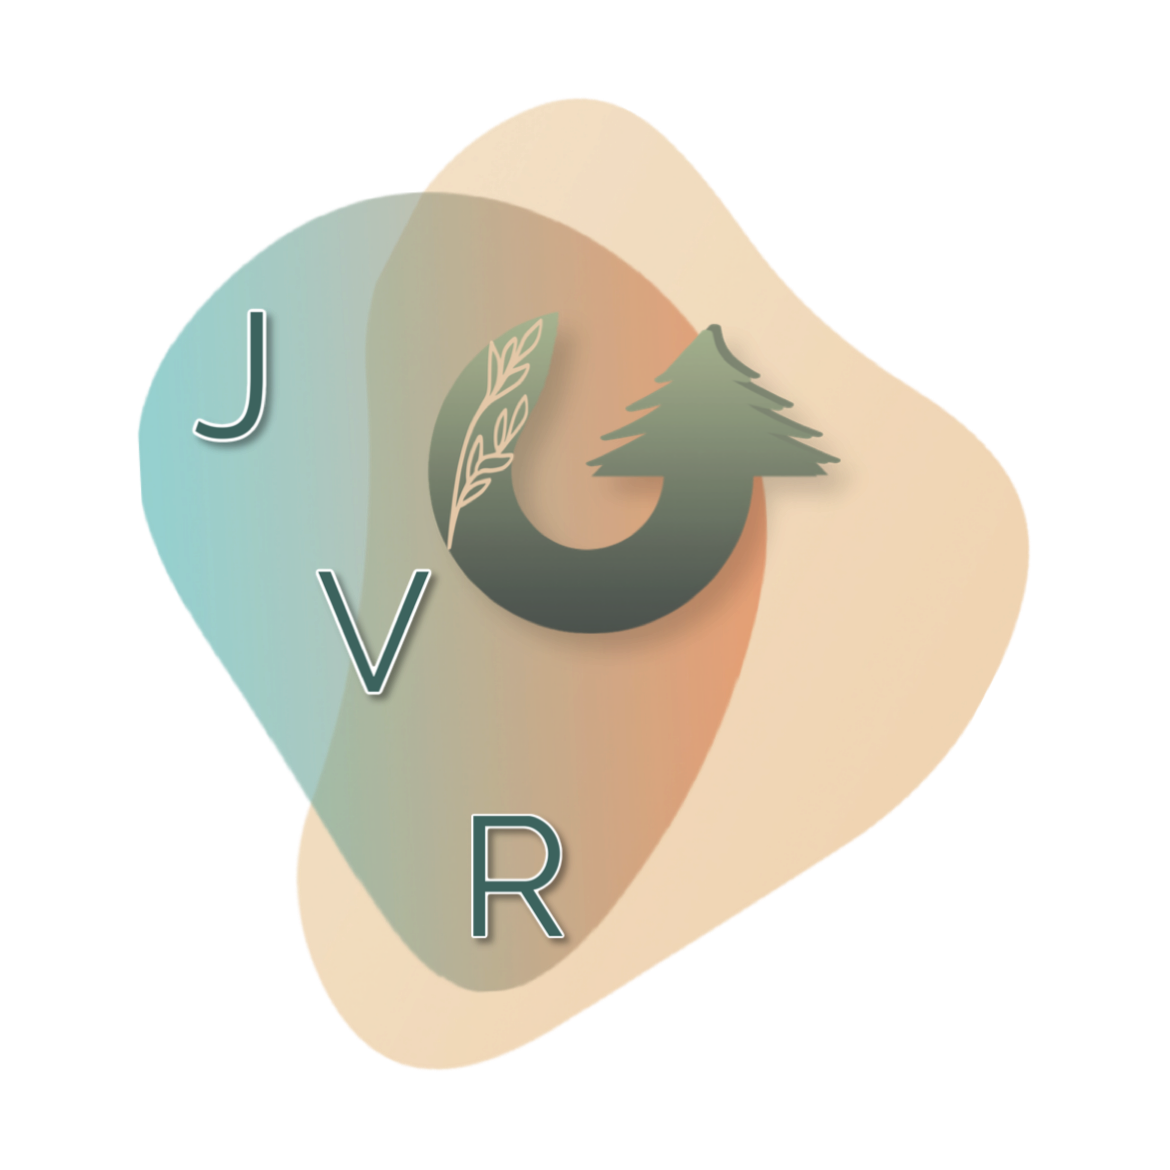 JVR Remodeling